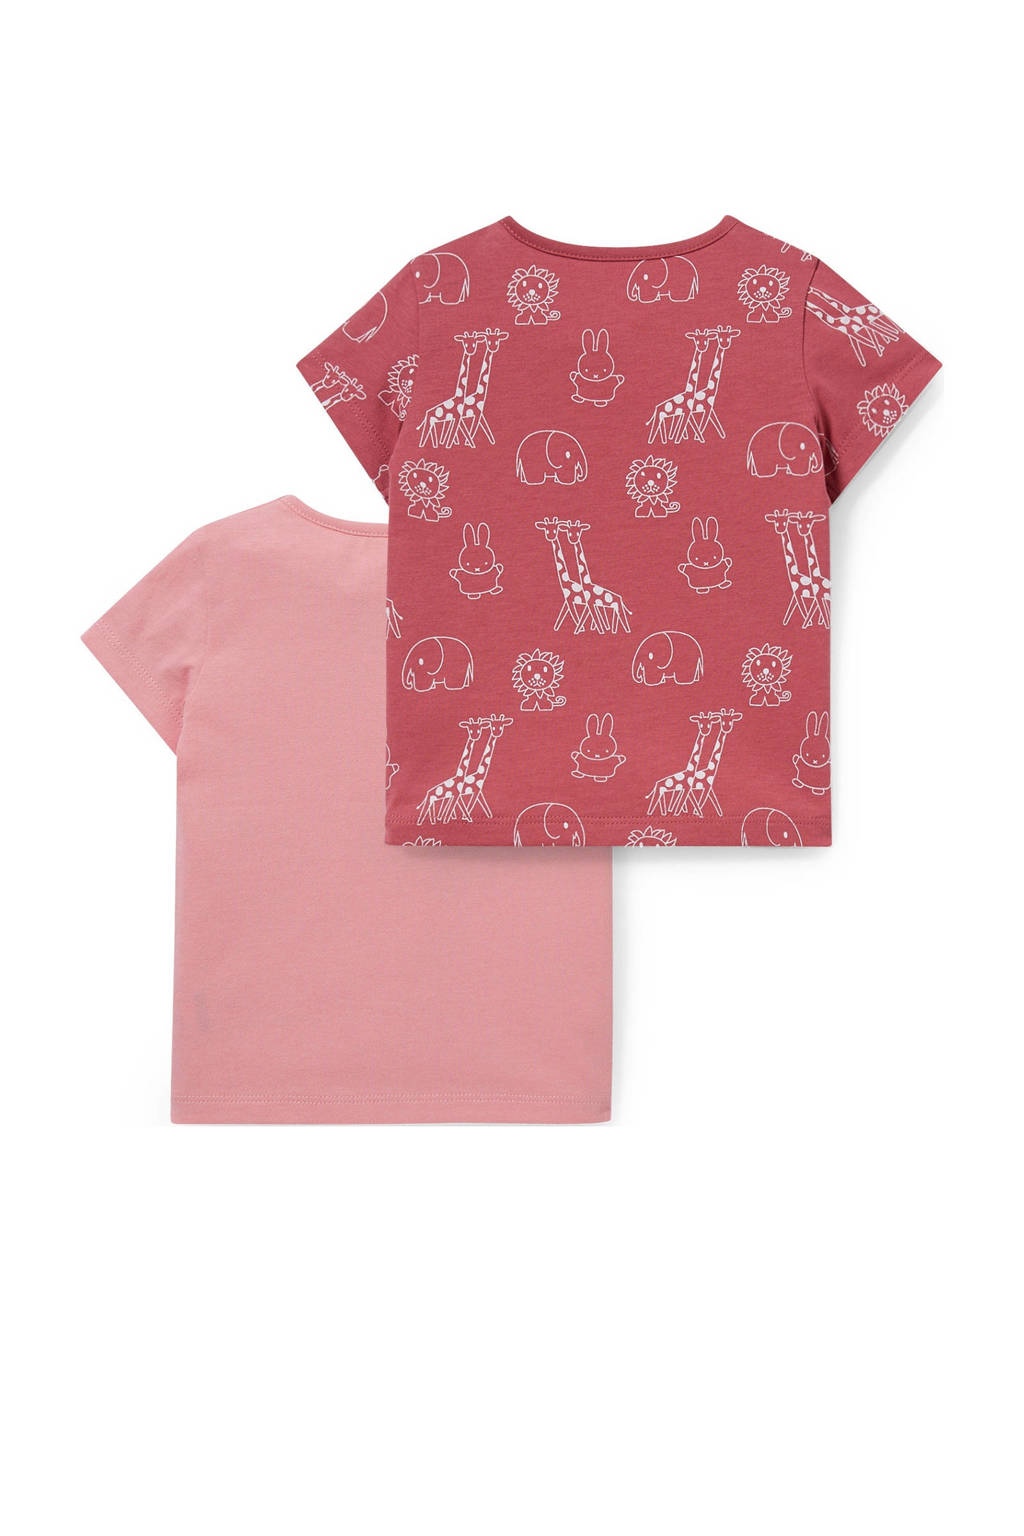 Oprechtheid lint veronderstellen C&A baby T-shirt Nijntje - set van 2 roze/donkerroze | wehkamp